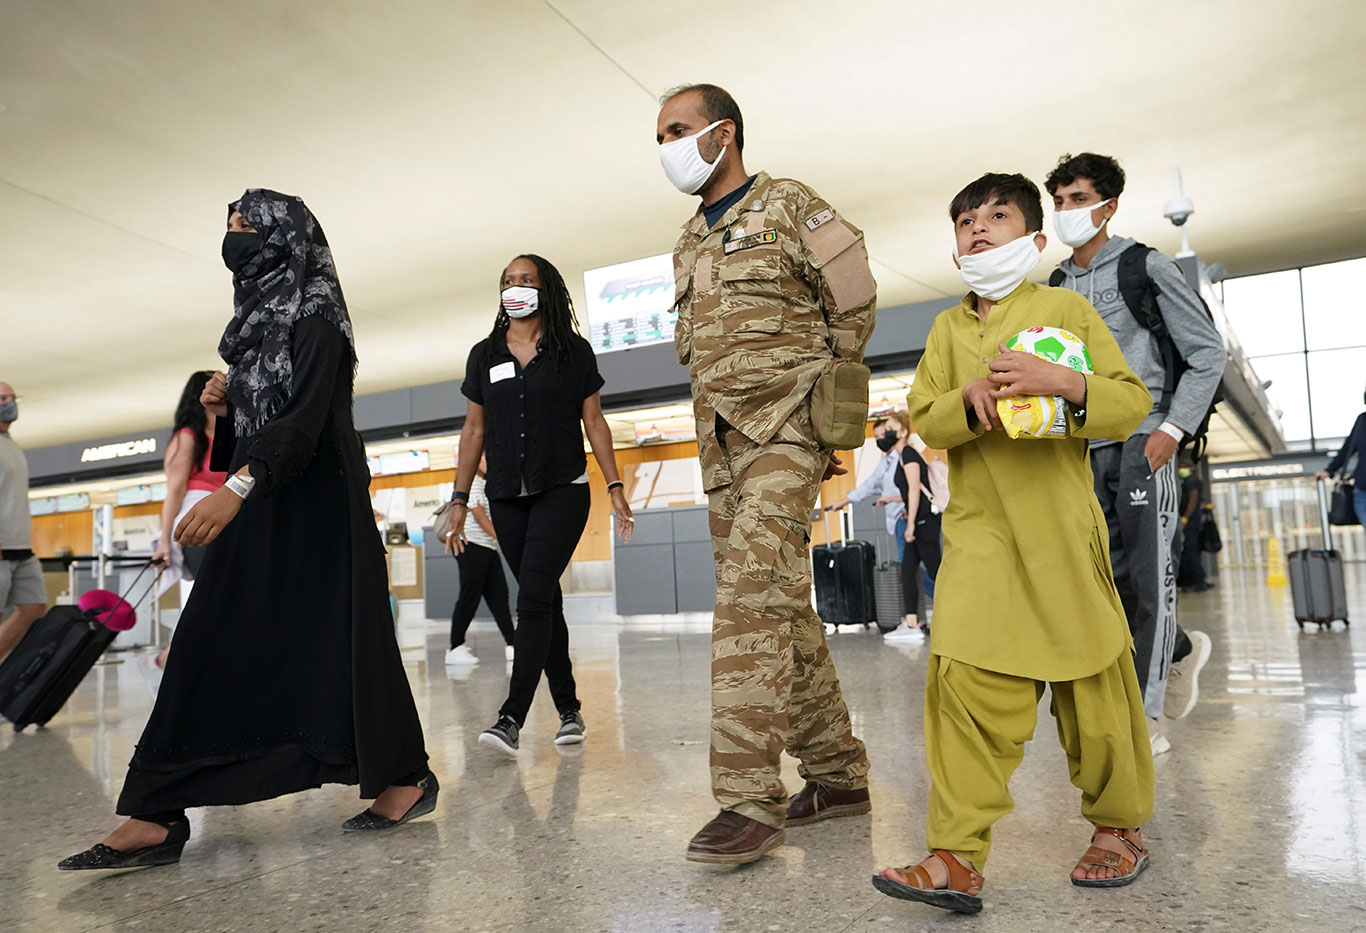 Família de afegãos caminha em direção a um ônibus que leva refugiados a um centro de processamento após sua chegada ao Aeroporto Internacional de Dulles, Virgínia (Foto: REUTERS/Kevin Lamarque)